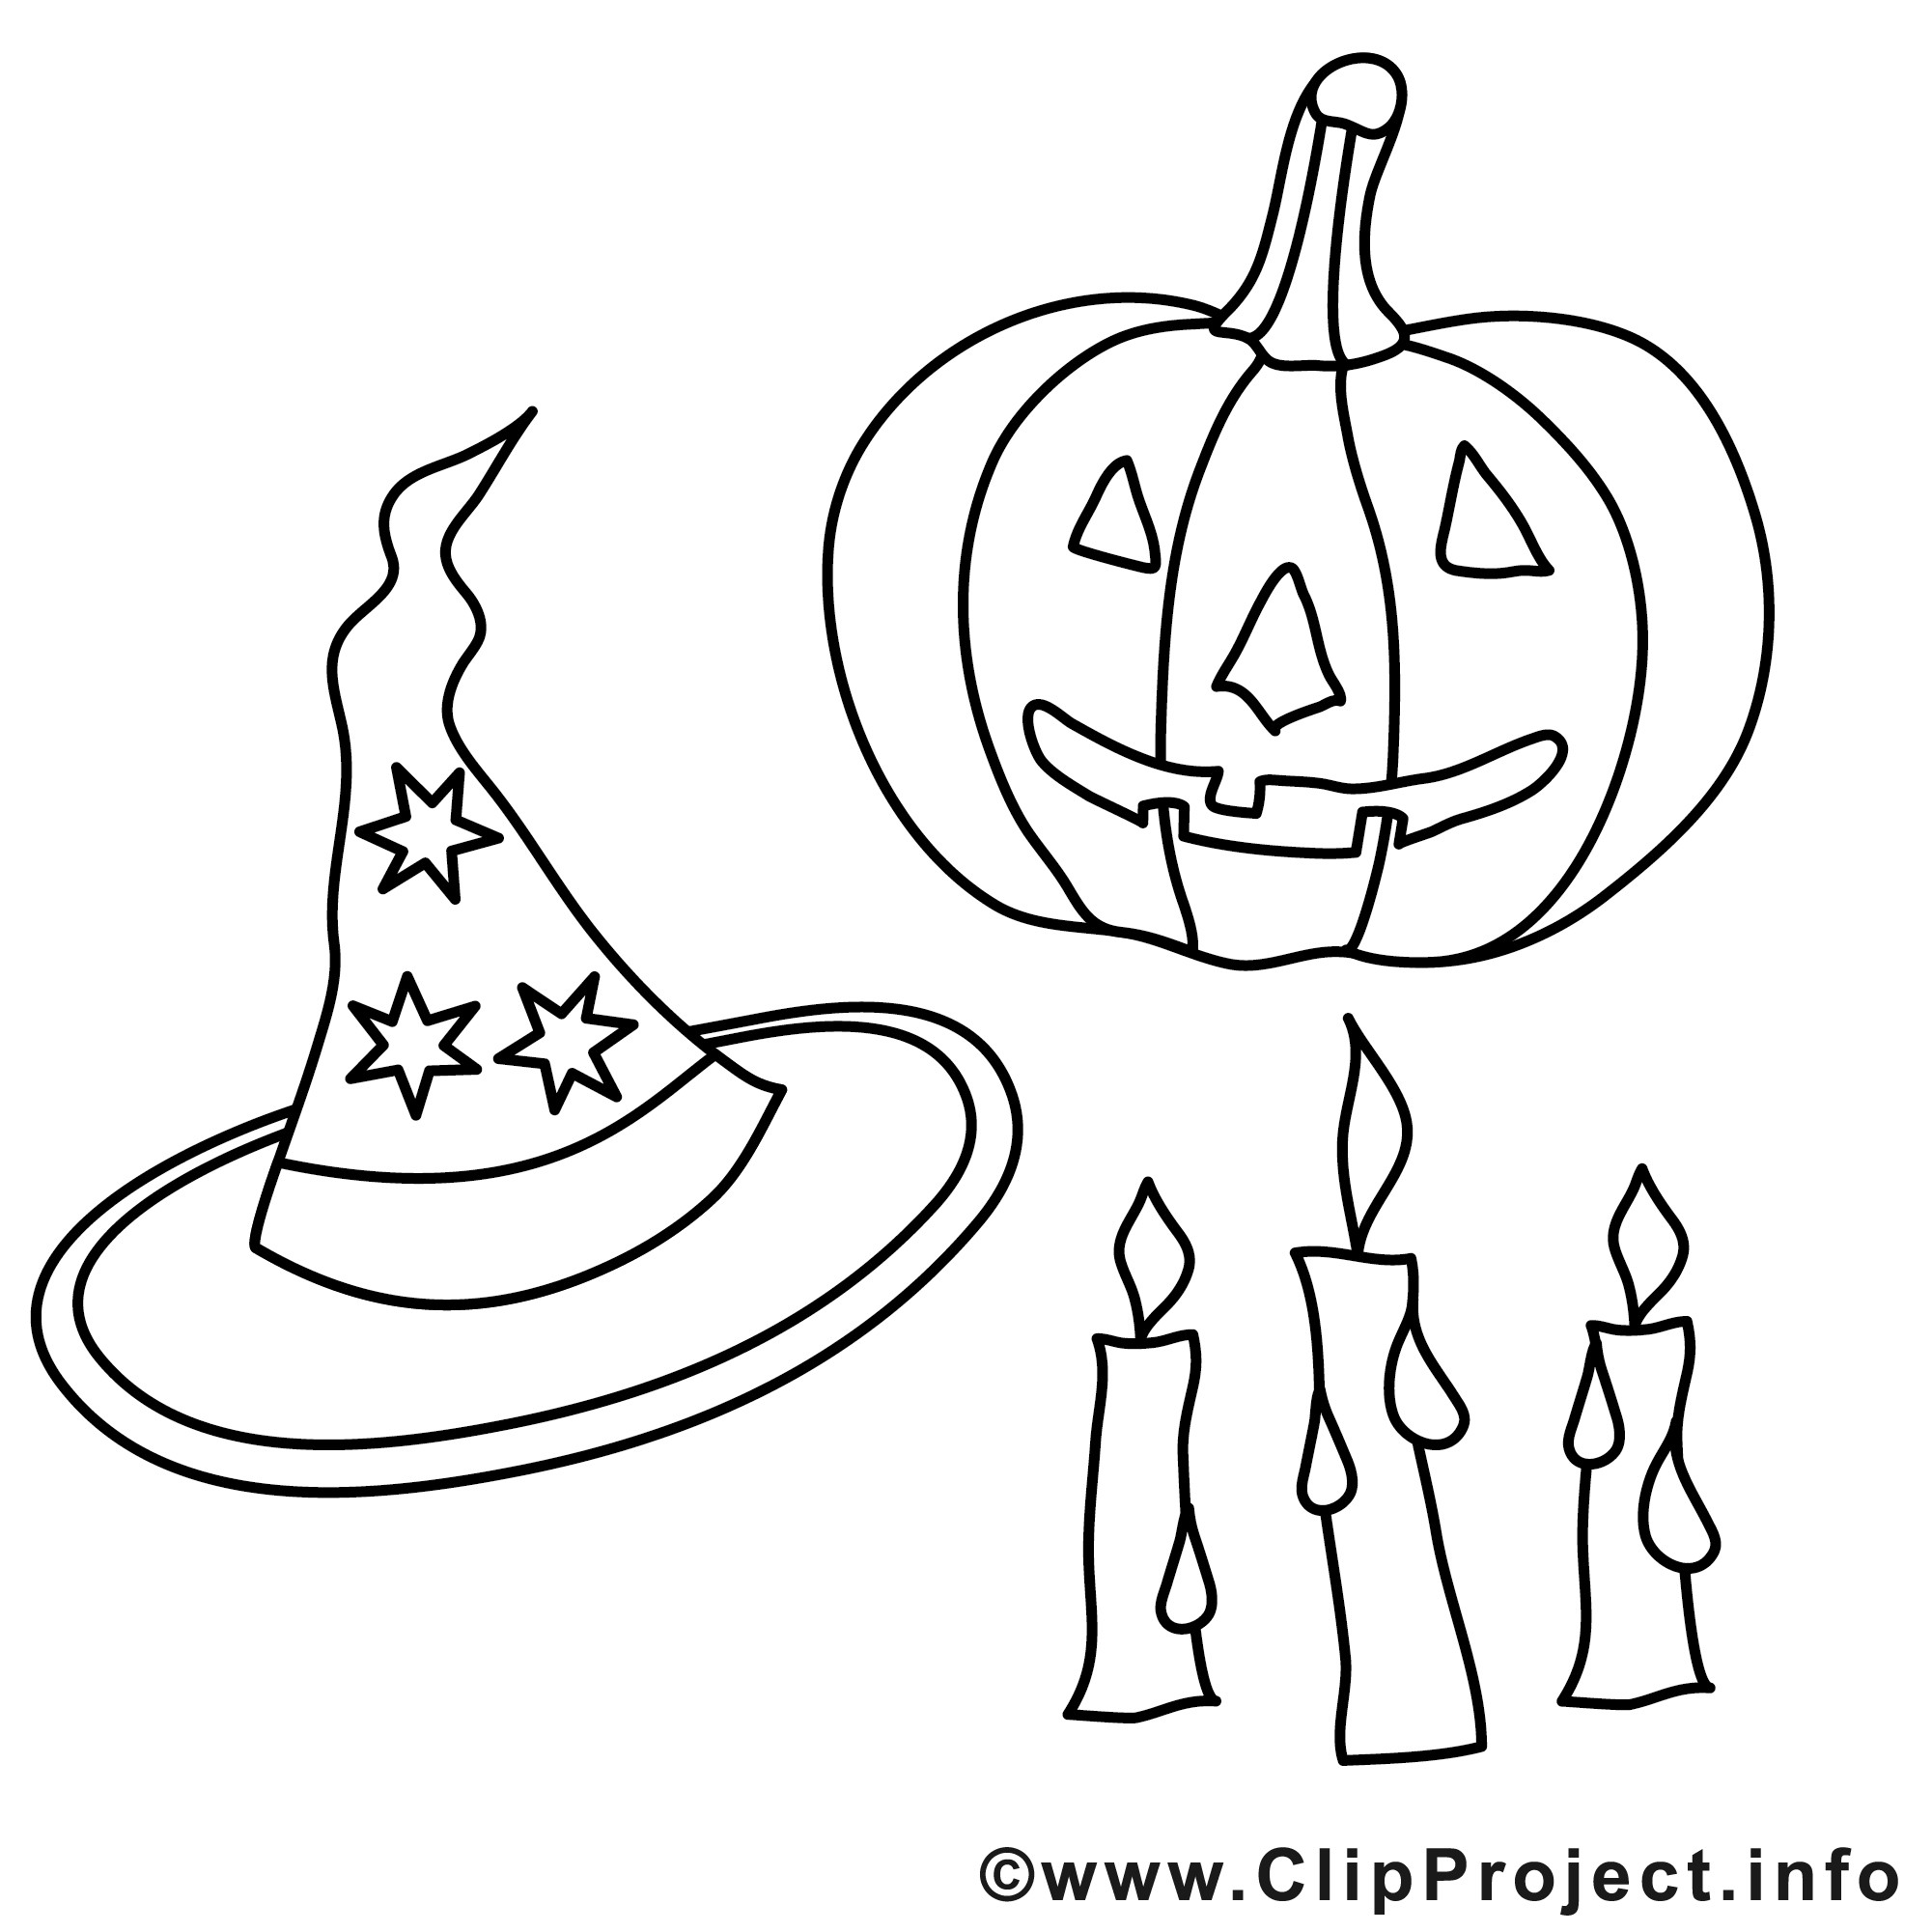 Gratis Malvorlagen Zum Ausdrucken
 Halloween Malvorlagen gratis zum Ausdrucken